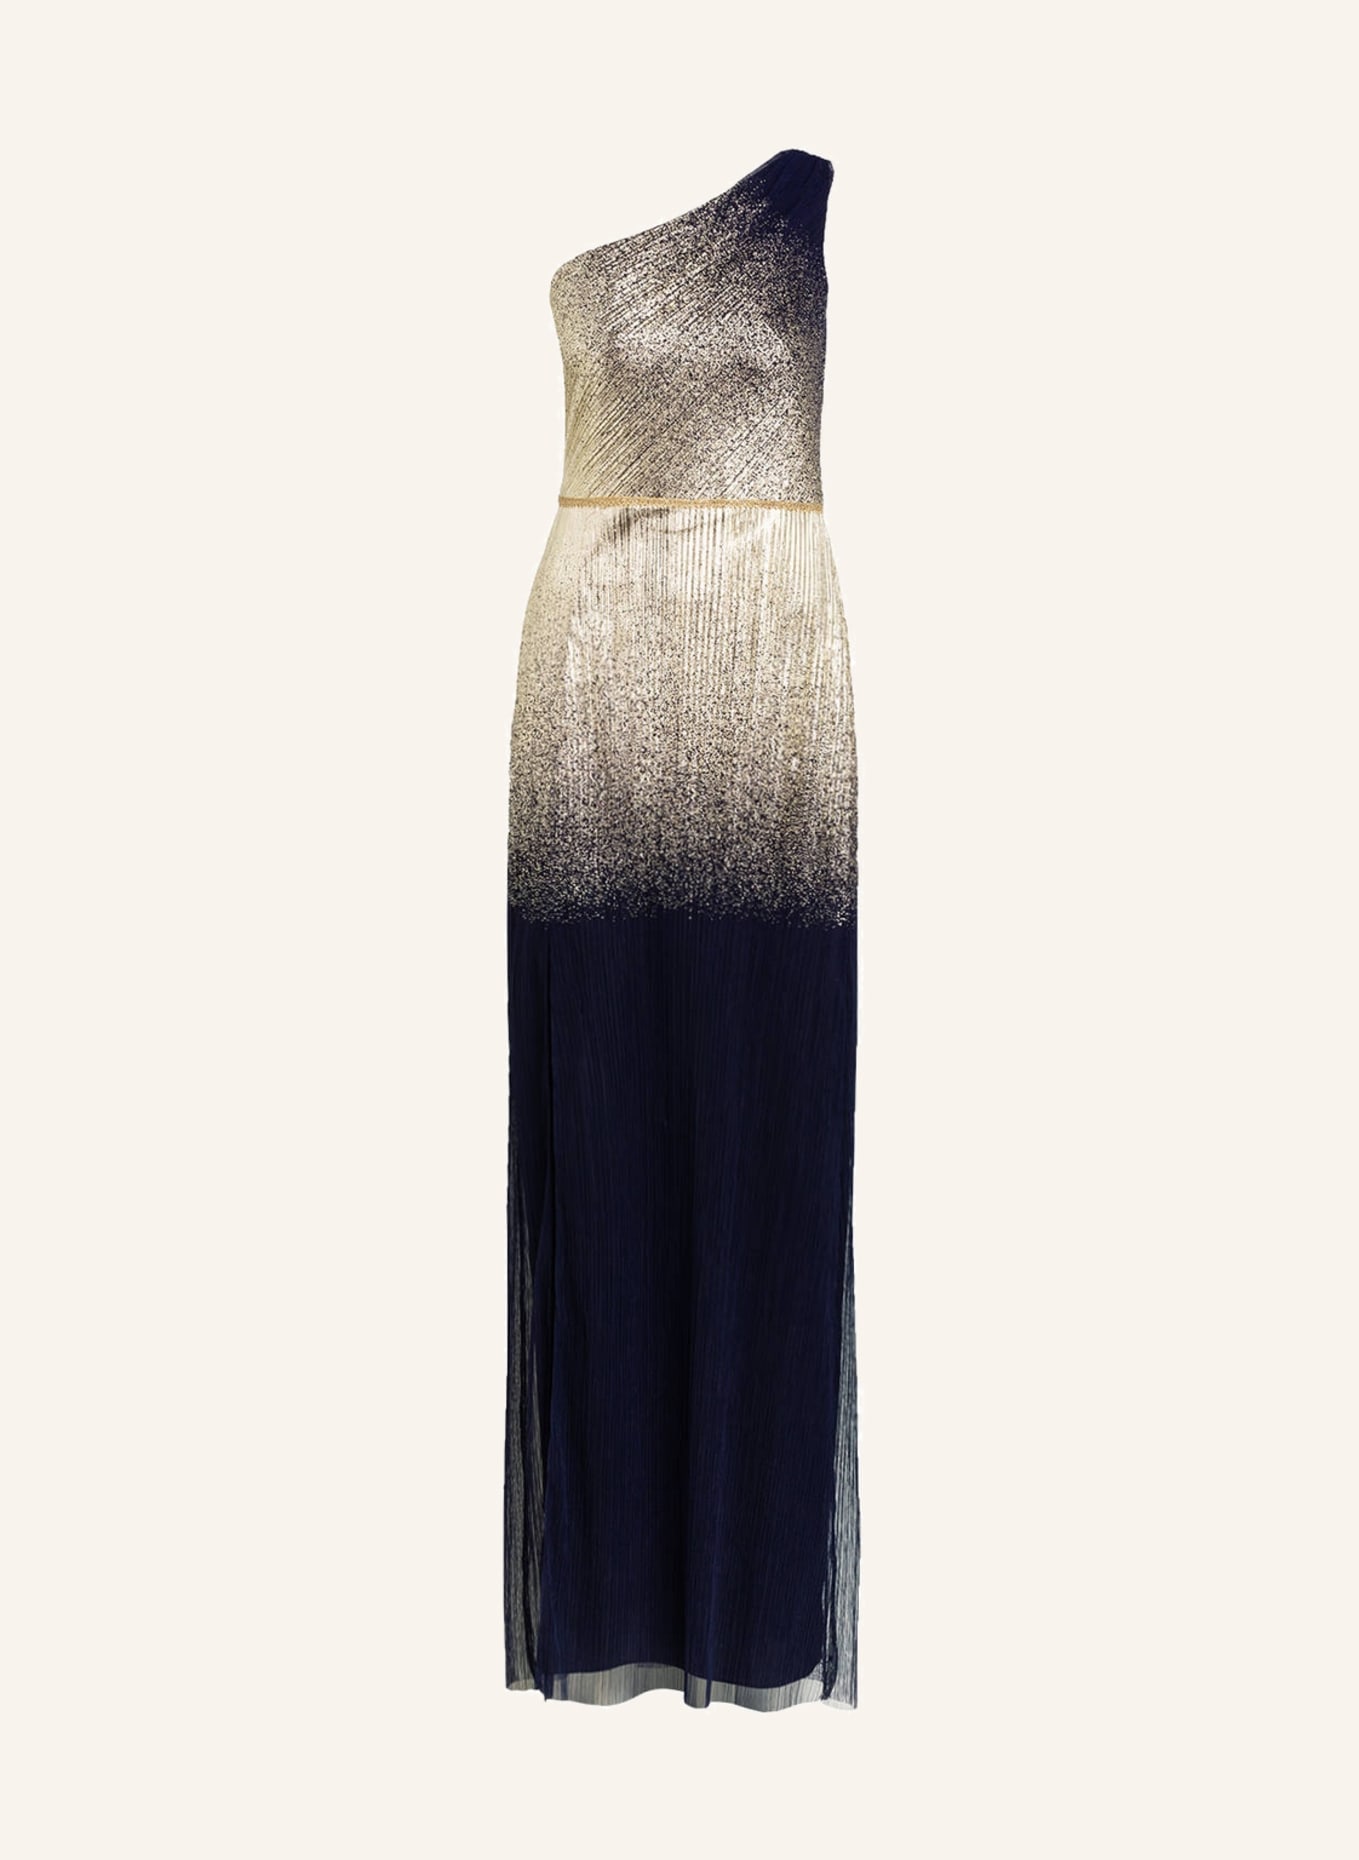 MARCHESA NOTTE One-Shoulder-Abendkleid, Farbe: DUNKELBLAU/ GOLD (Bild 1)